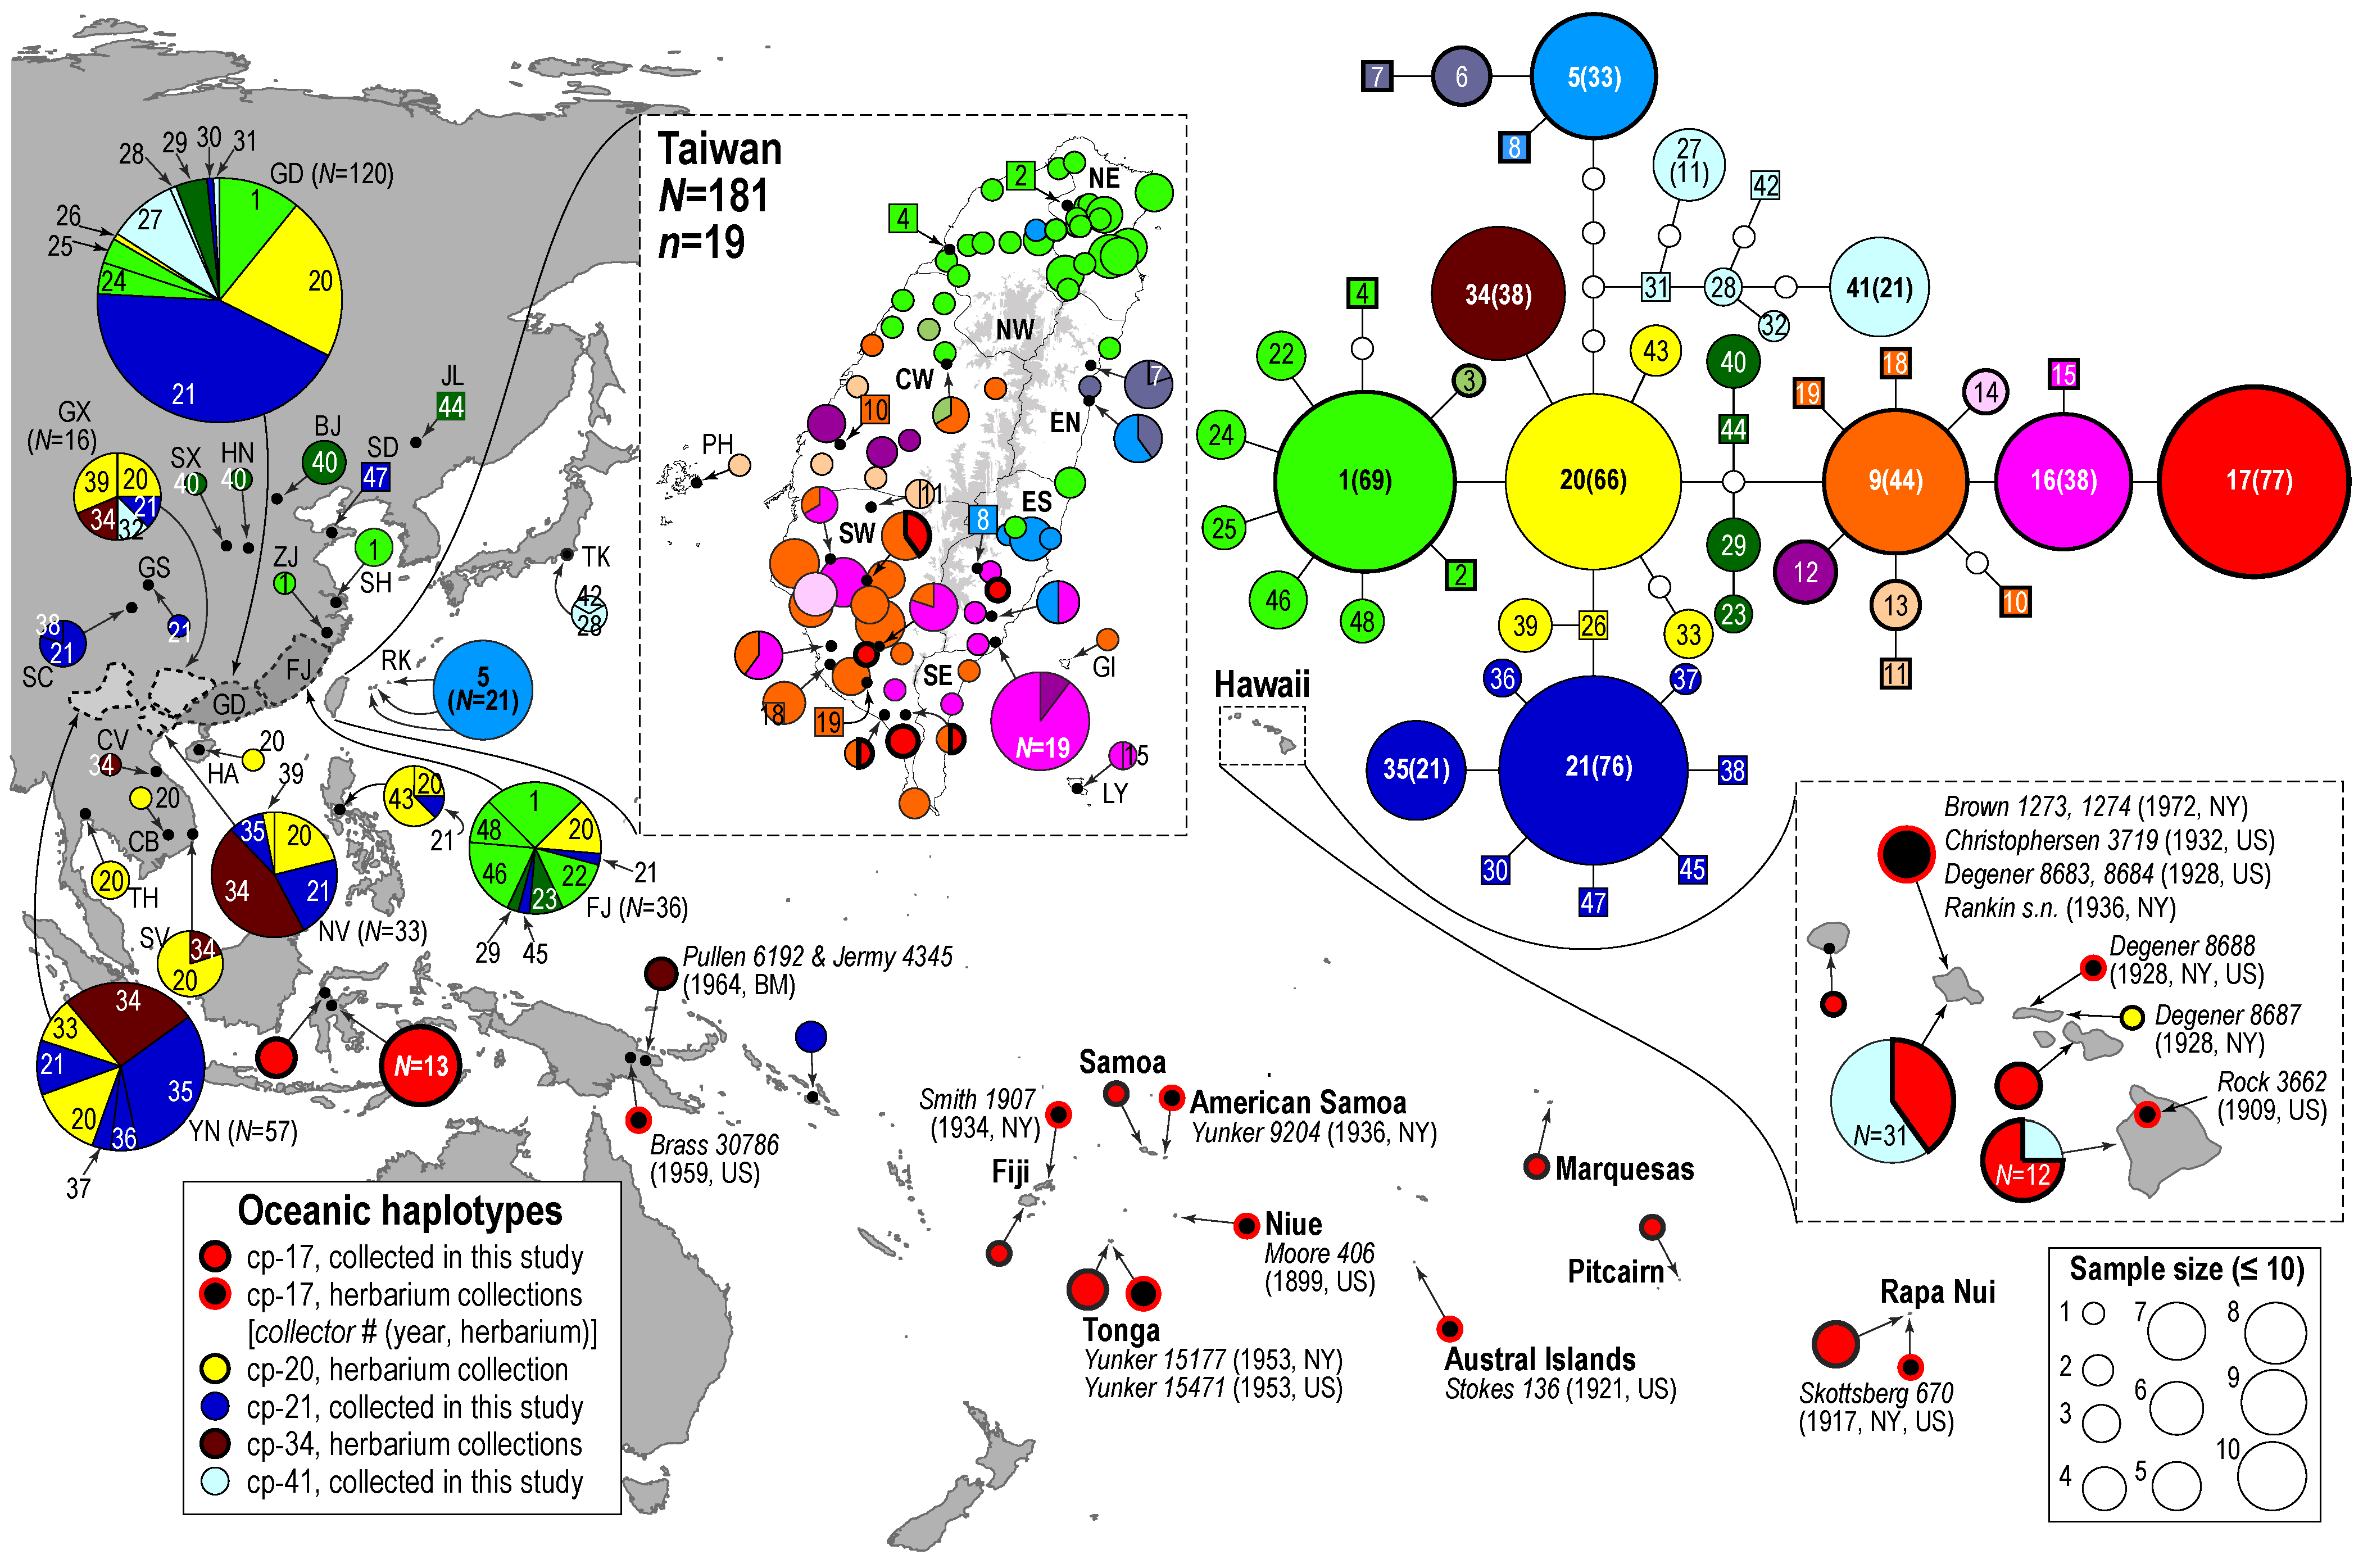 鍾國芳團隊搜集東亞與南太平洋各島嶼的構樹樣本，根據特定葉綠體基因序列分析顯示，這些構樹樣本帶有 48 種不同的單倍型。其中 CP-17 單倍型(紅色圓圈)在大洋洲佔大多數，也出現在臺灣南部。圖中右上方可看到，CP-17 由臺灣南部特有的 CP-16 (粉紅色圓圈)、CP-9 (橘色圓圈)演化而來，與臺灣北部、亞洲大陸常見的 CP-1 (綠色圓圈), CP-20 (黃色圓圈)關係較遠。圖│A holistic picture of Austronesian migrations revealed by phylogeography of Pacific paper mulberry